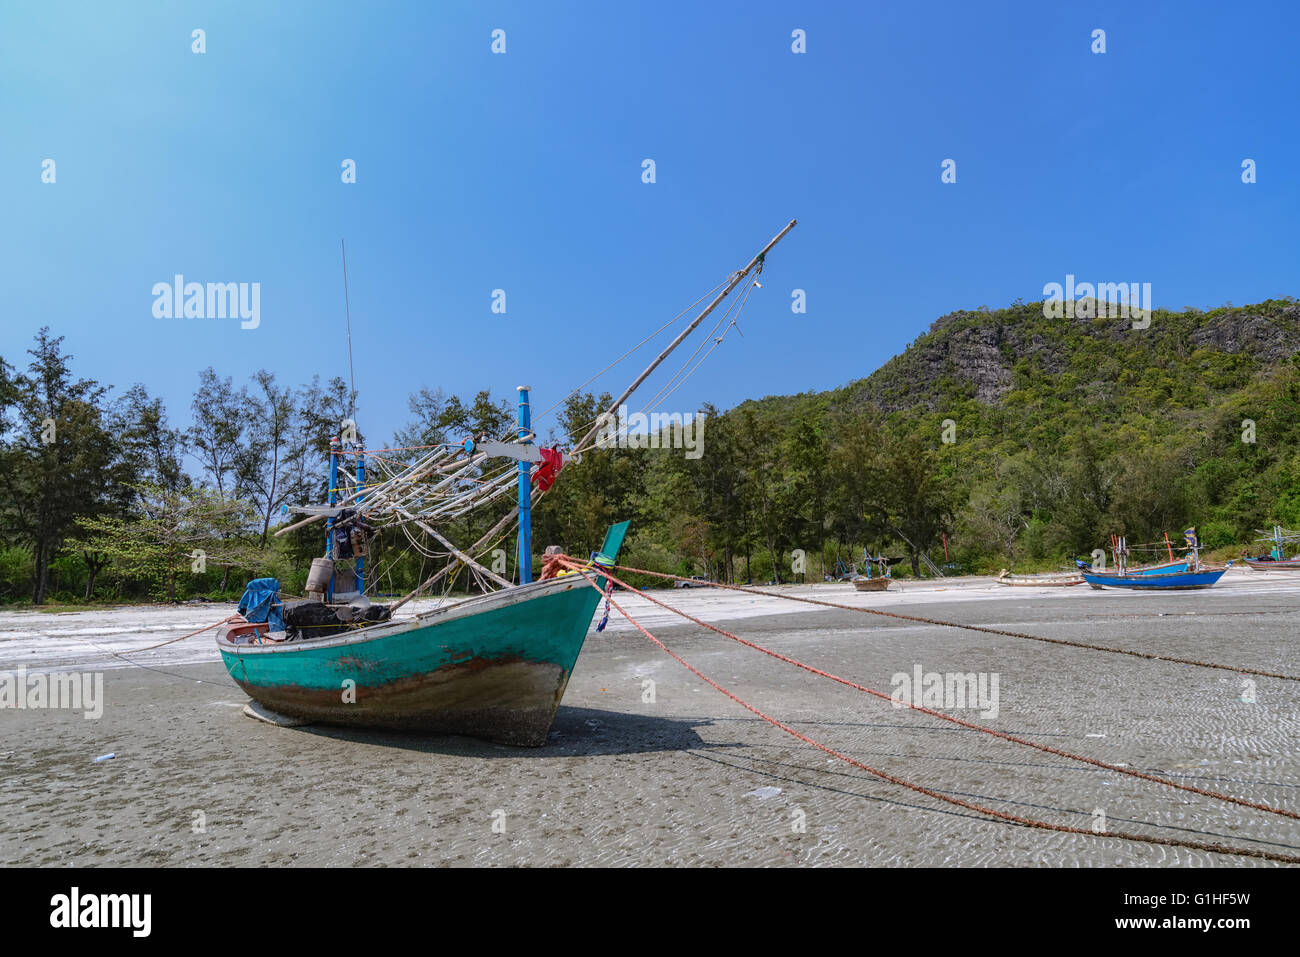 Des bateaux de pêche à la plage du golfe de Laem Sala province de Prachuap Khiri Khan en Thaïlande. Banque D'Images